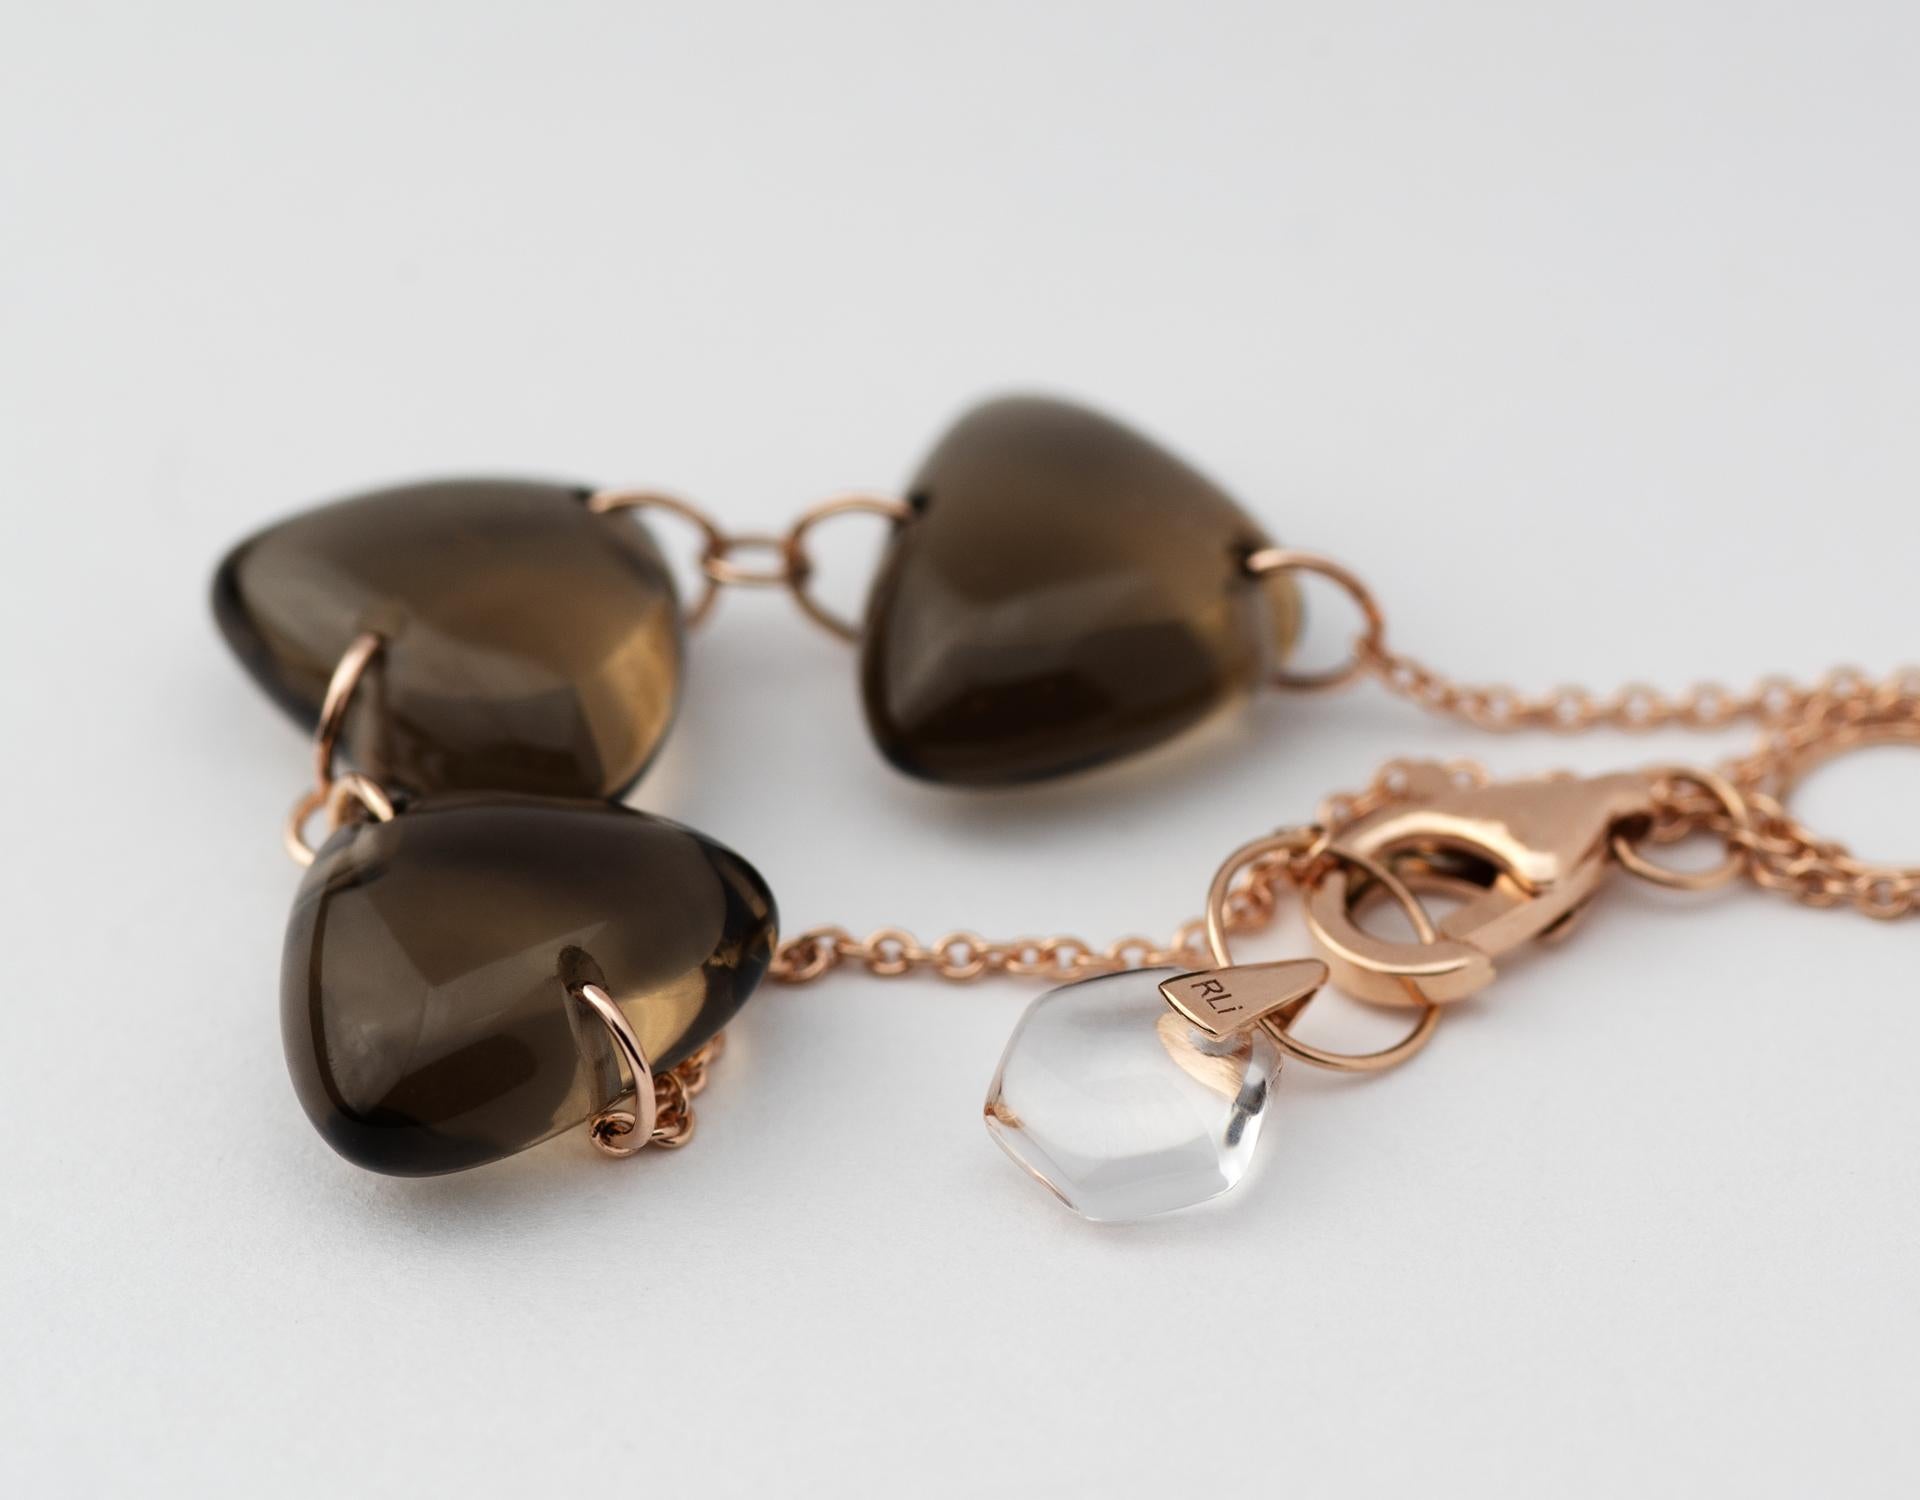 Rebecca Li Crystal Link Bracelet, 18 Karat Gold with Smoky Quartz and Crystal For Sale 2